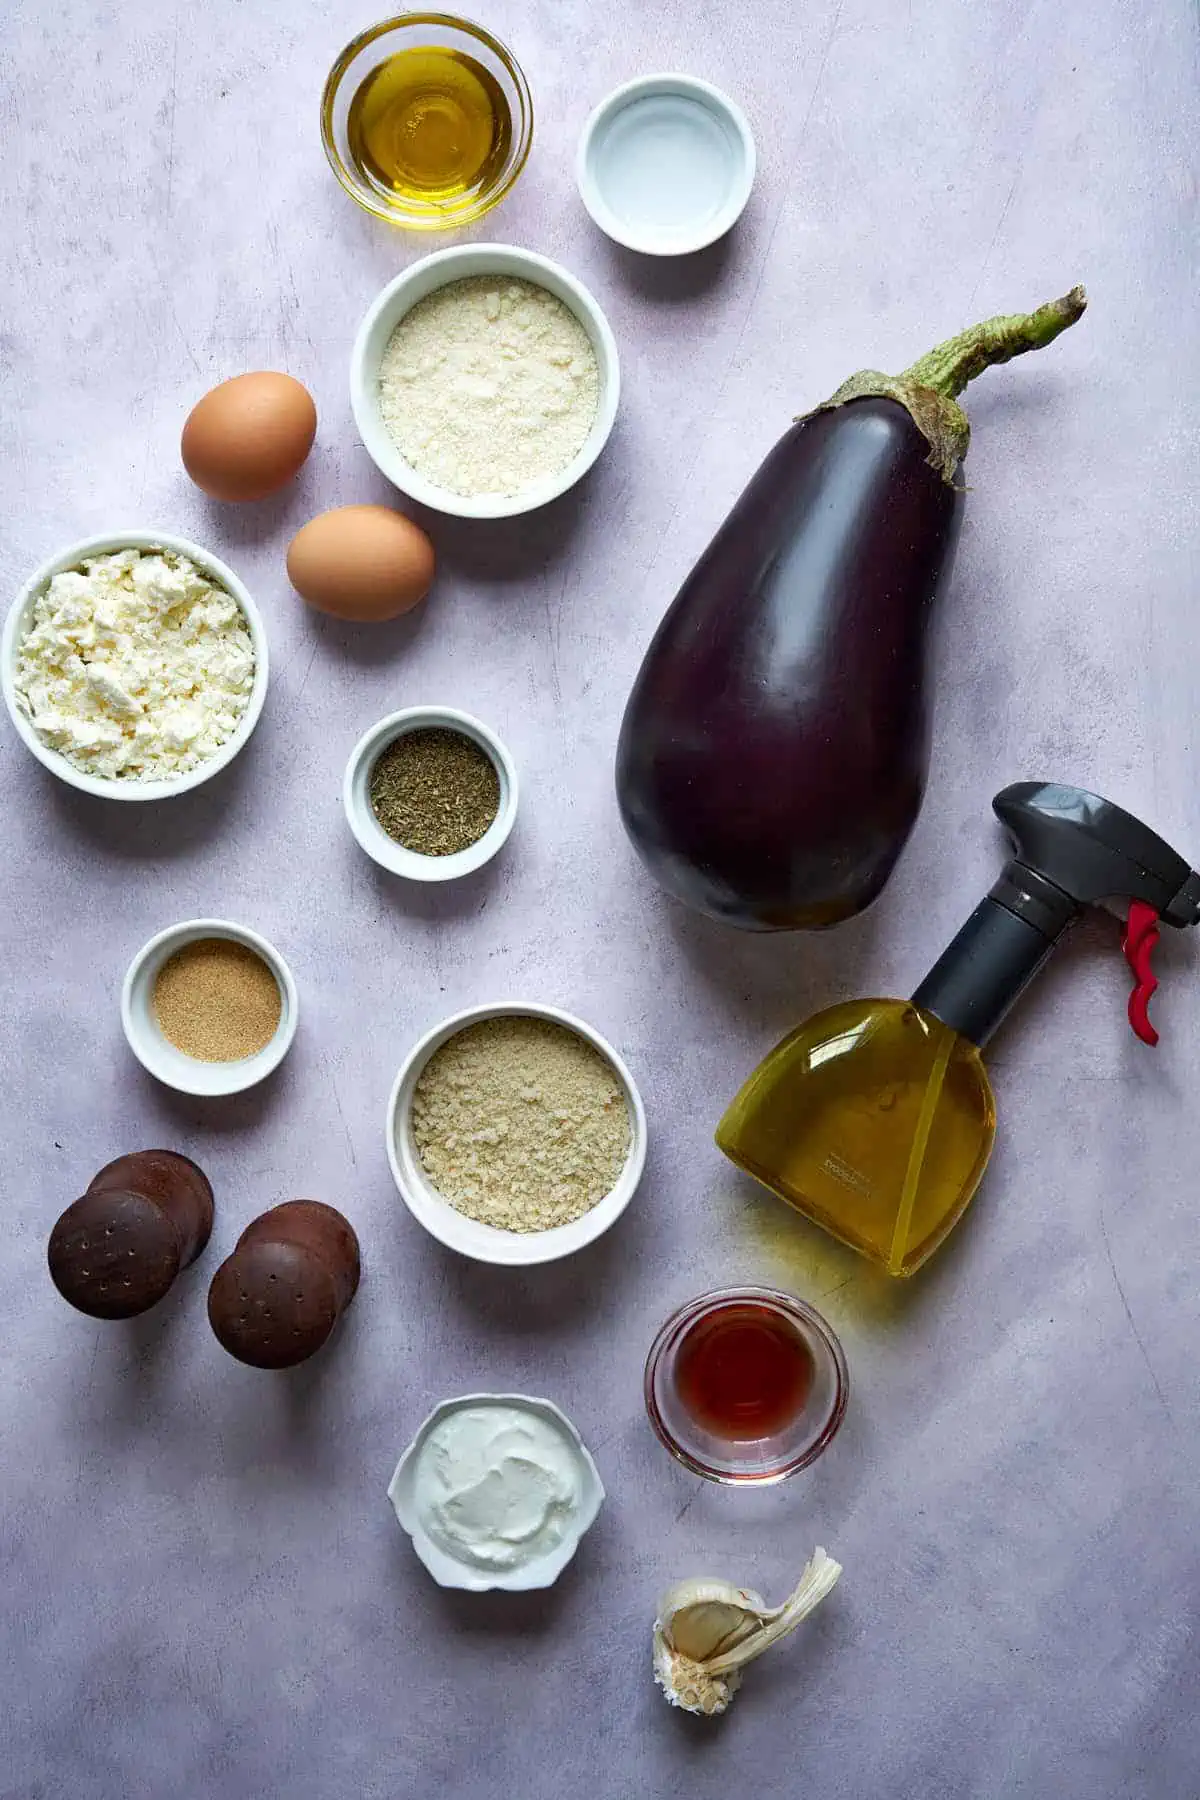 Ingredients to make eggplant fries.